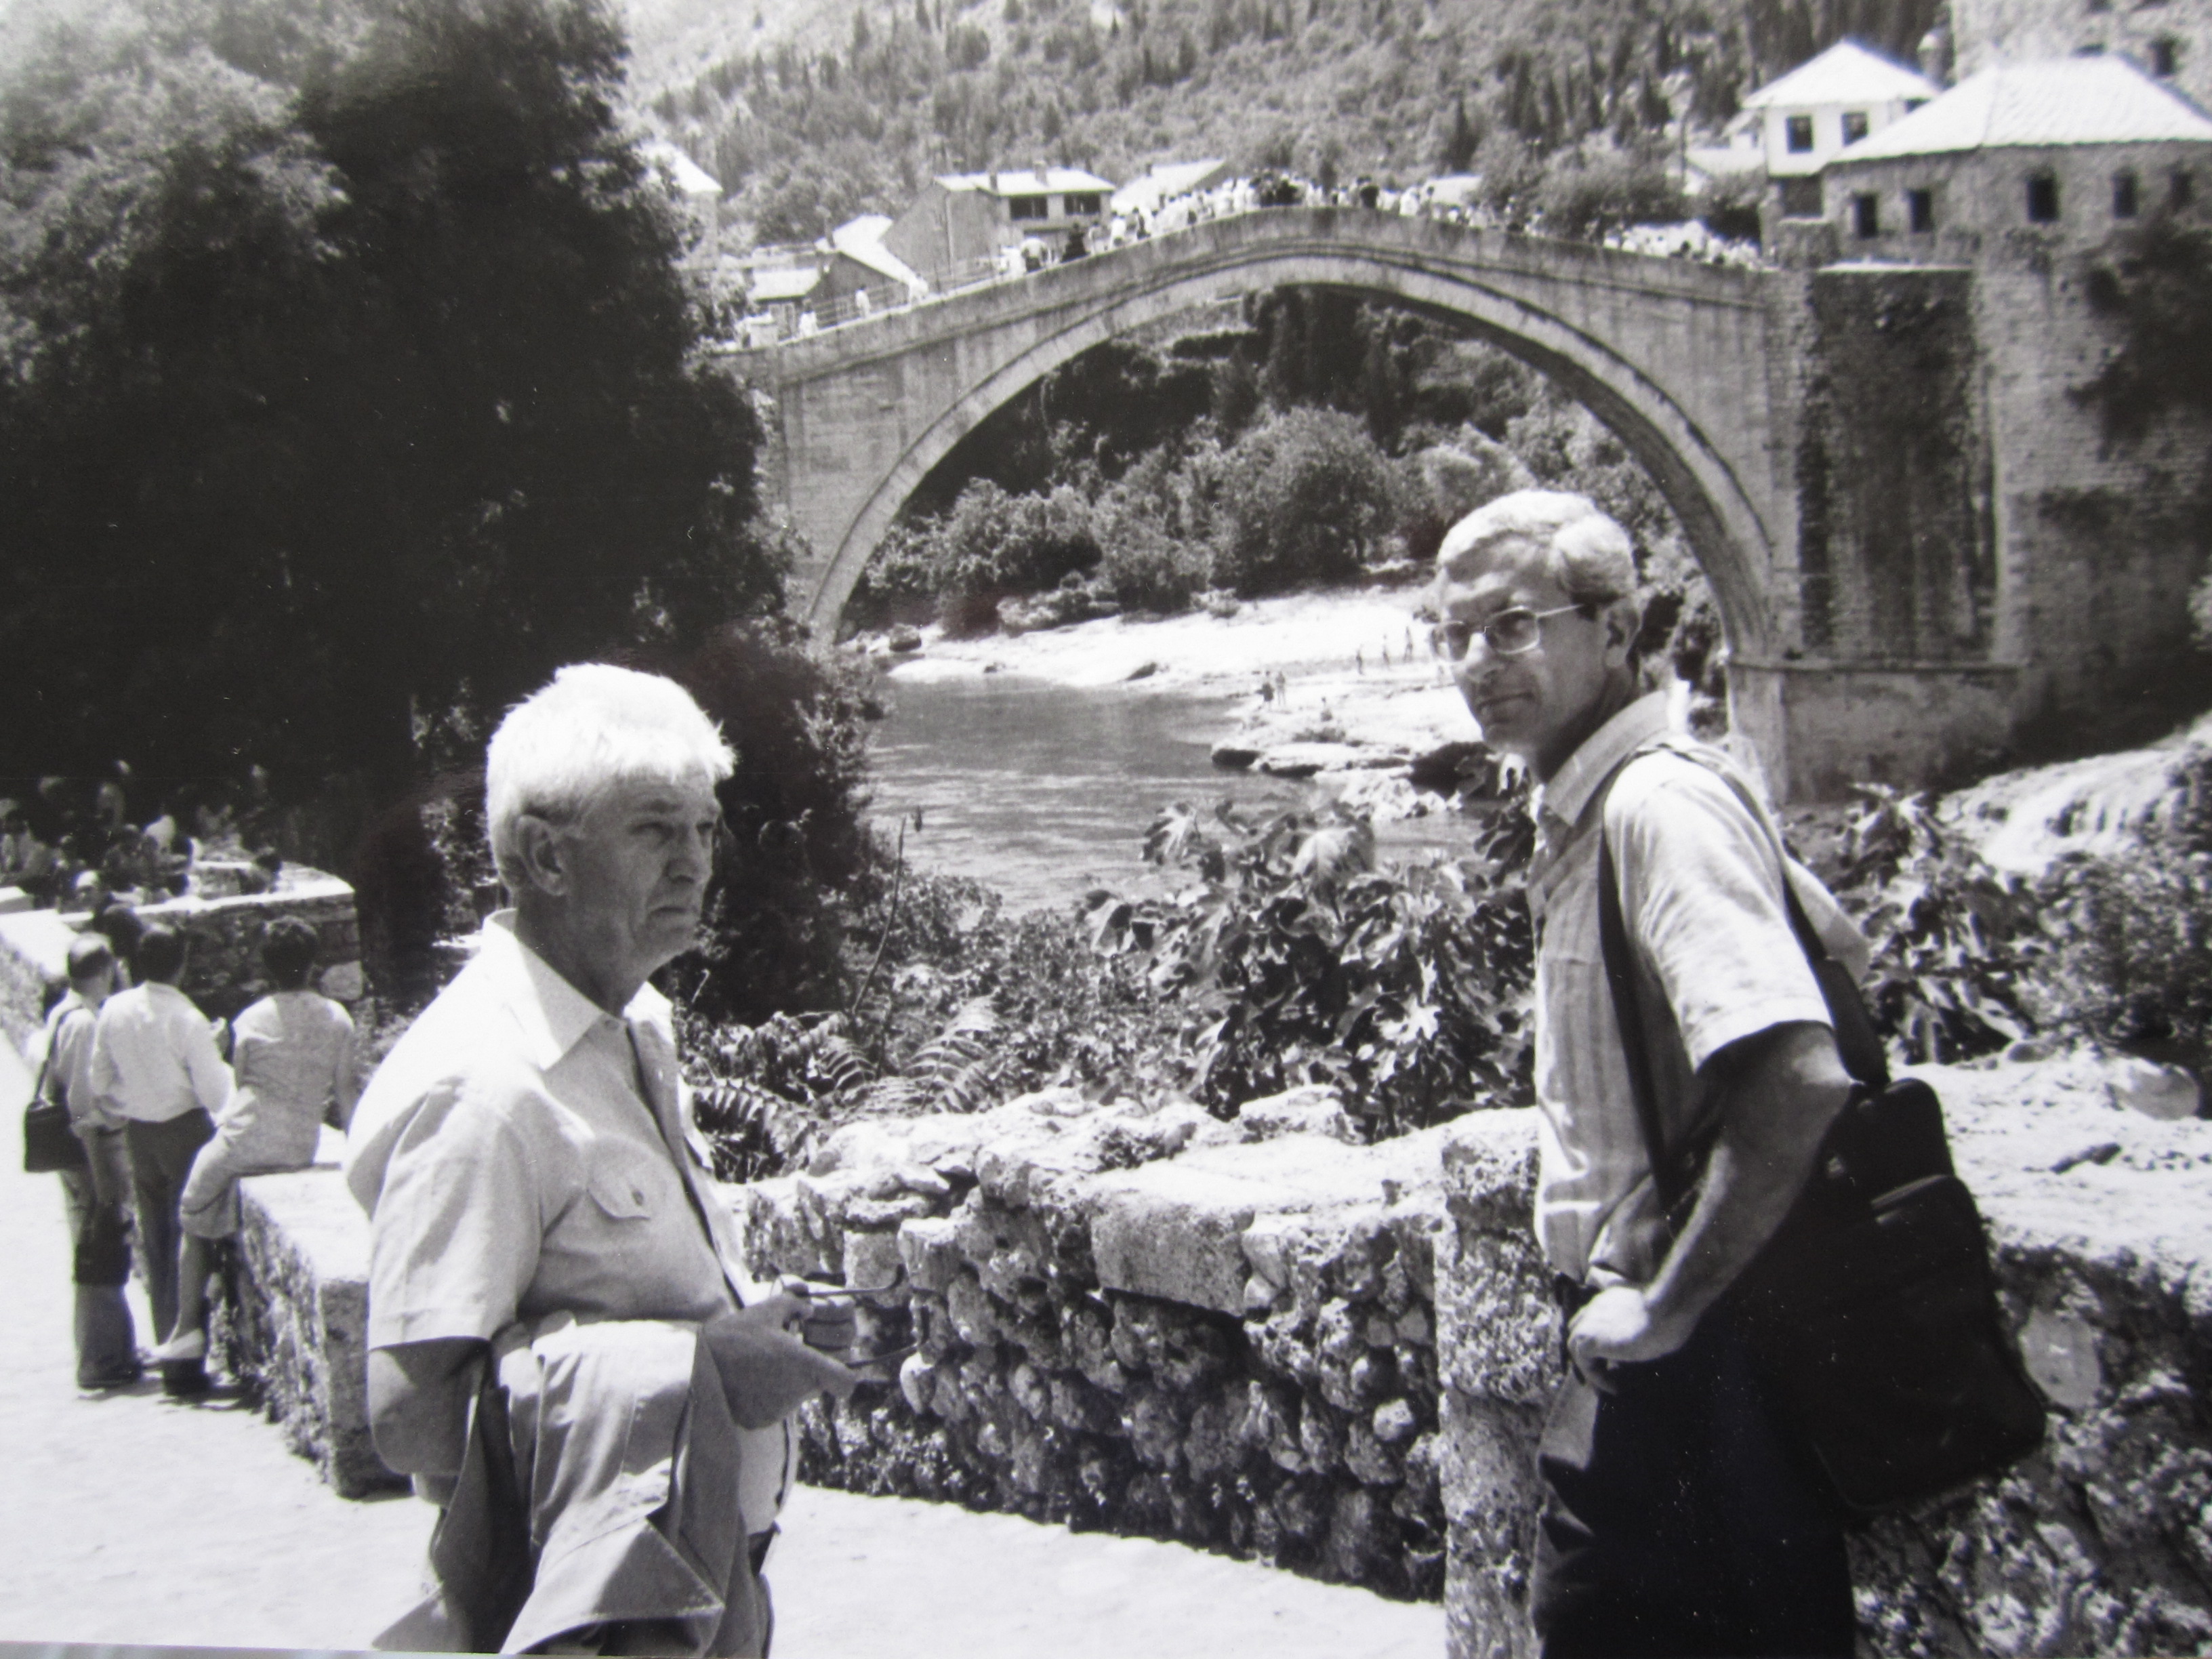 Con Ivo Baucic, in occasione di un convegno internazionale sull’emigrazione organizzato nel 1979 a Mostar, davanti al ponte simbolo distrutto durante la guerra dei Balcani recentemente ricostruito 